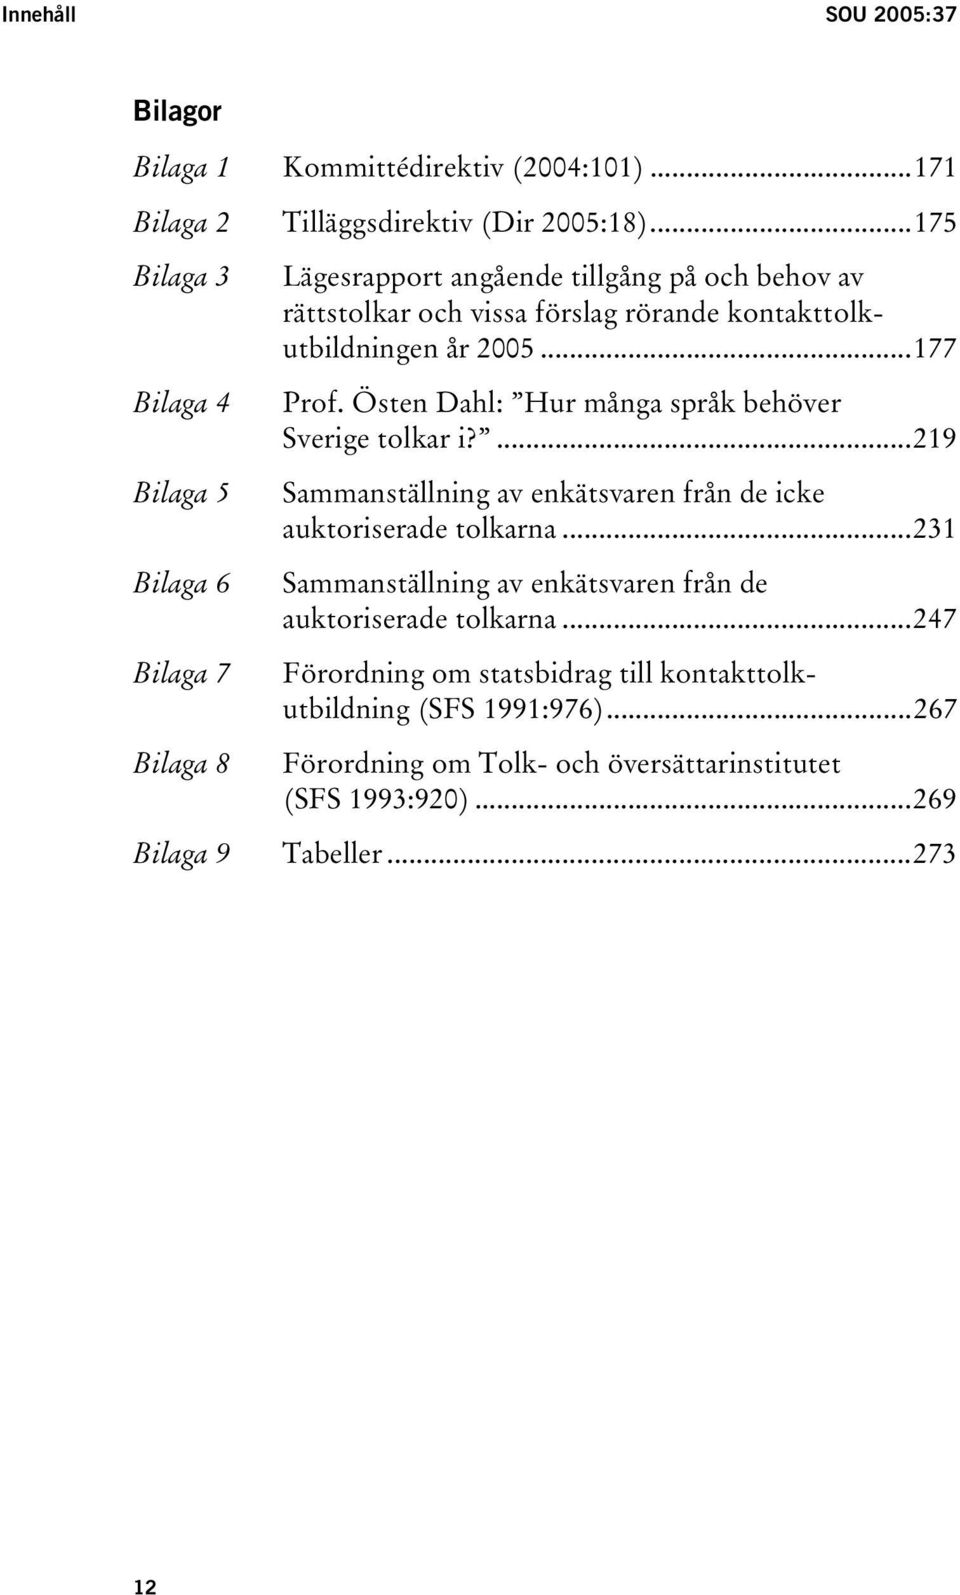 kontakttolkutbildningen år 2005...177 Prof. Östen Dahl: Hur många språk behöver Sverige tolkar i?